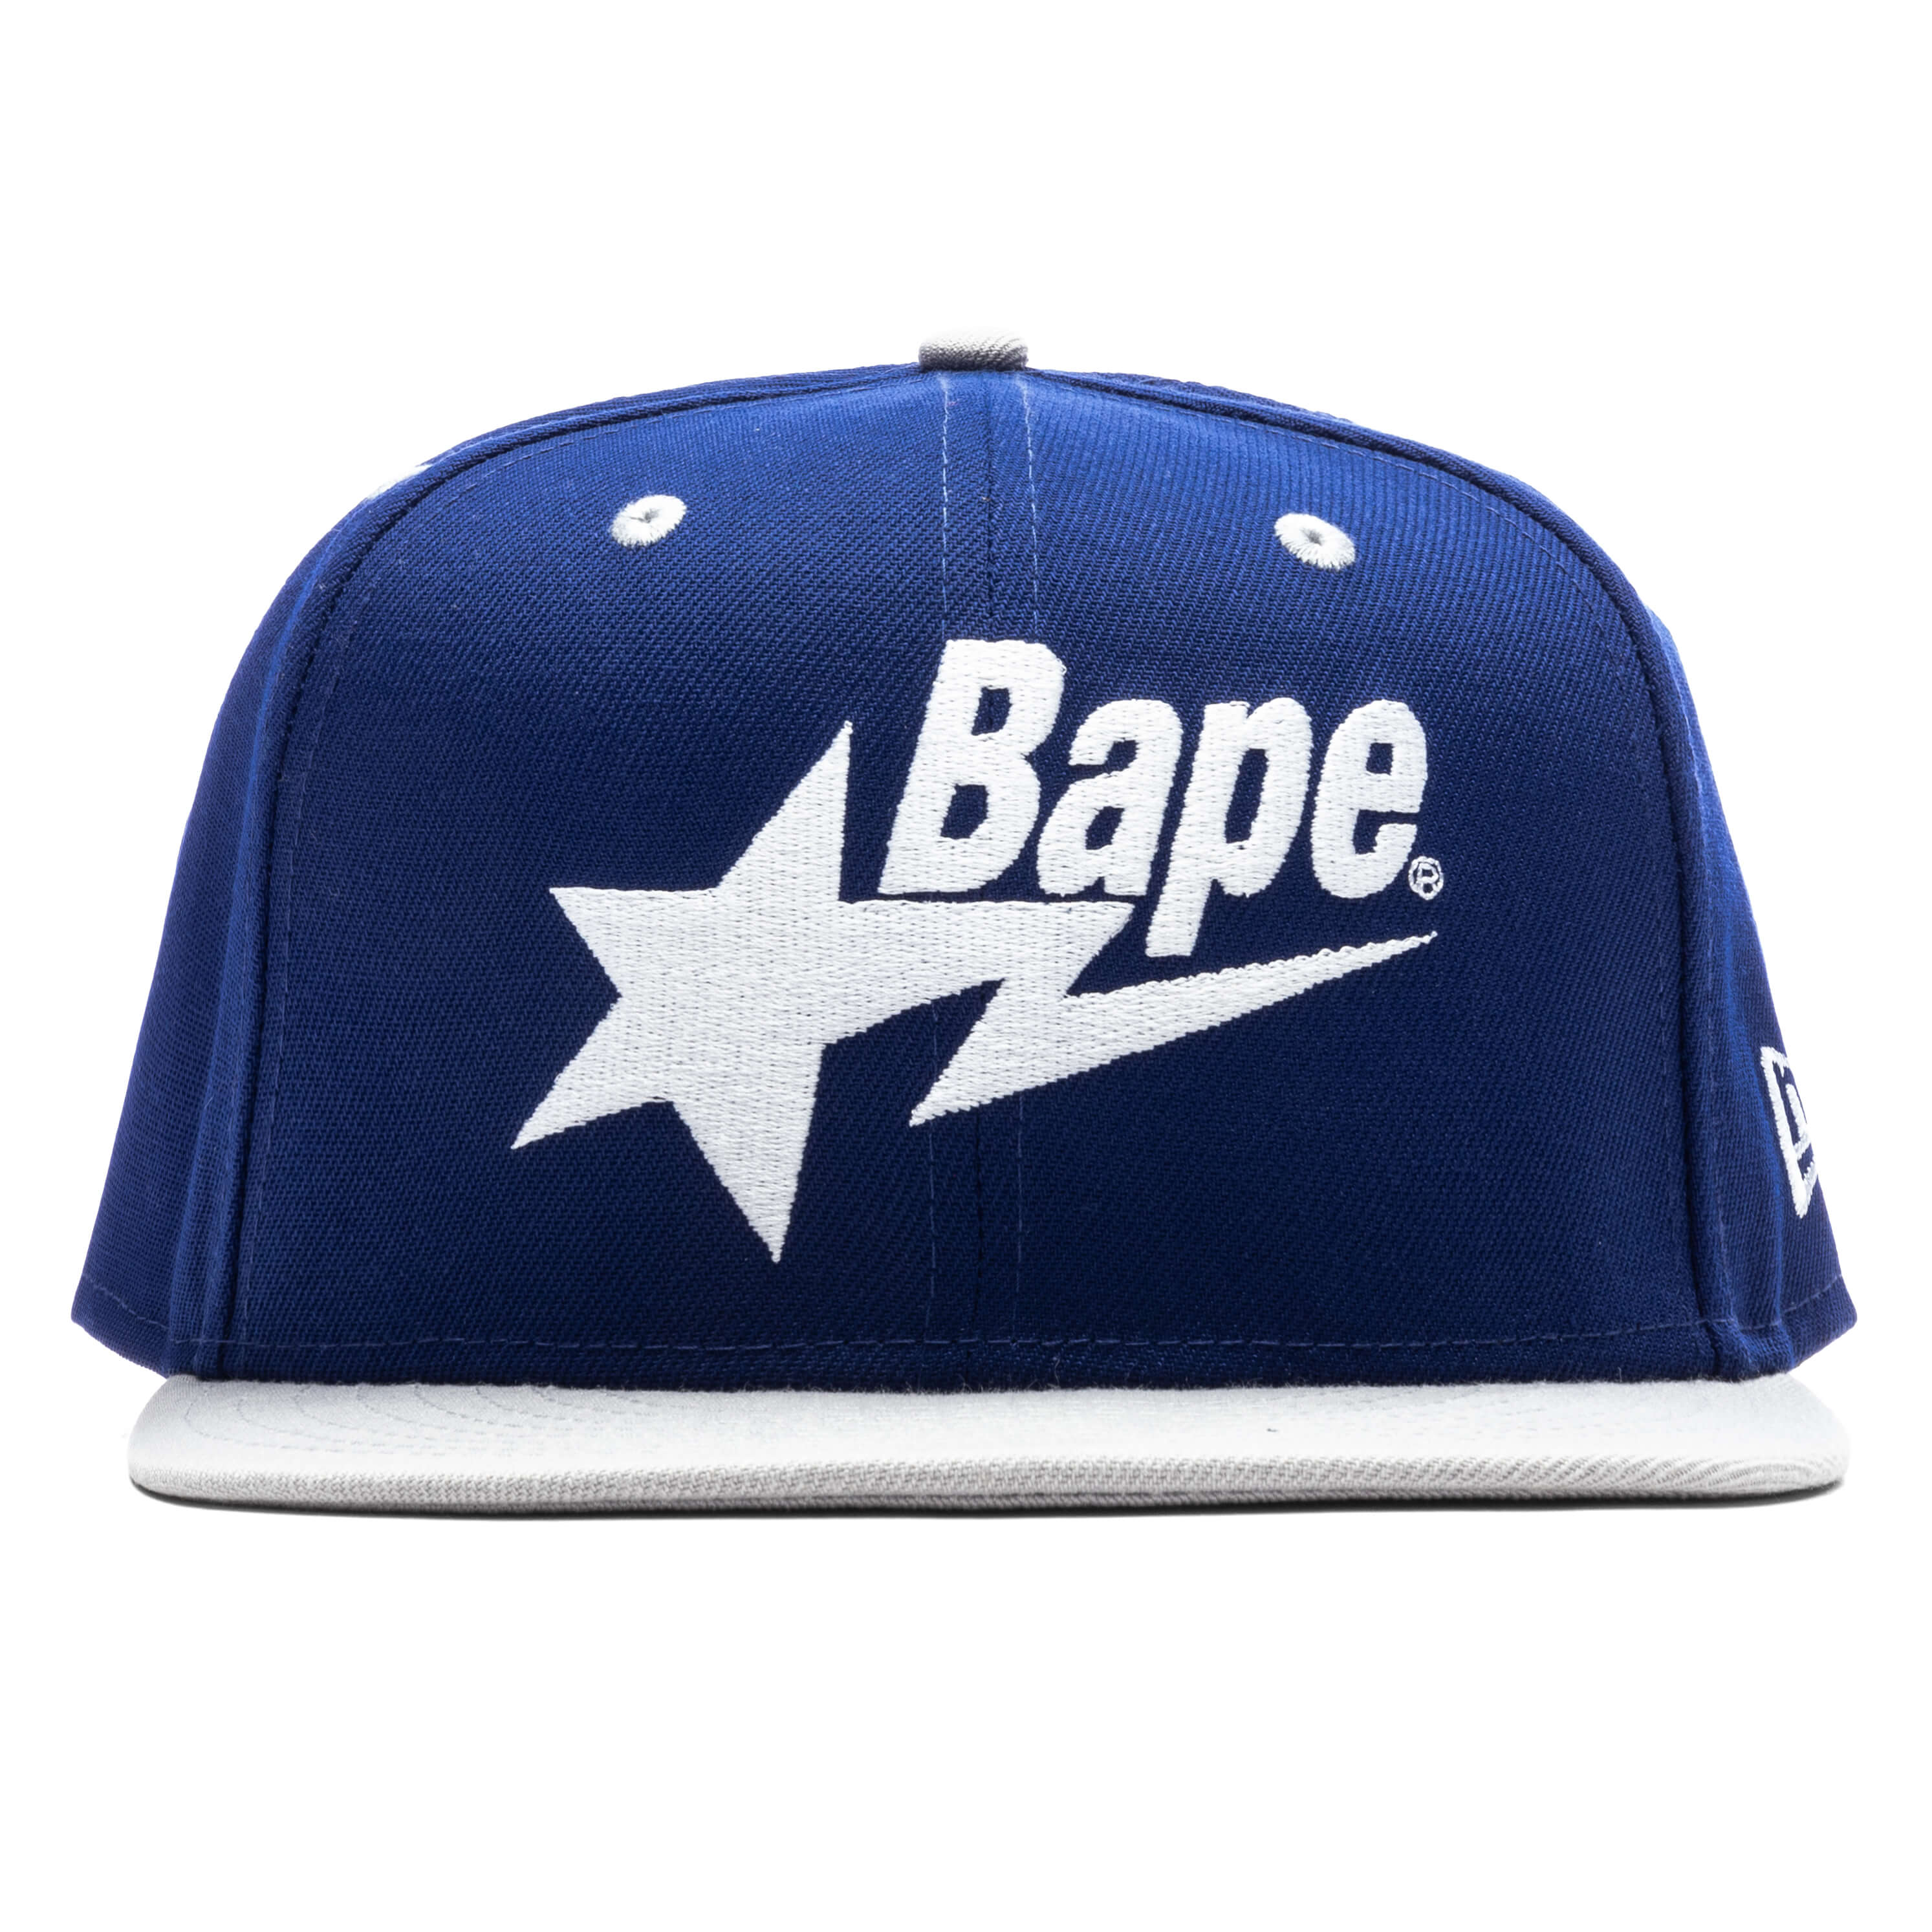 Bapesta New Era 9Fifty Cap - Blue